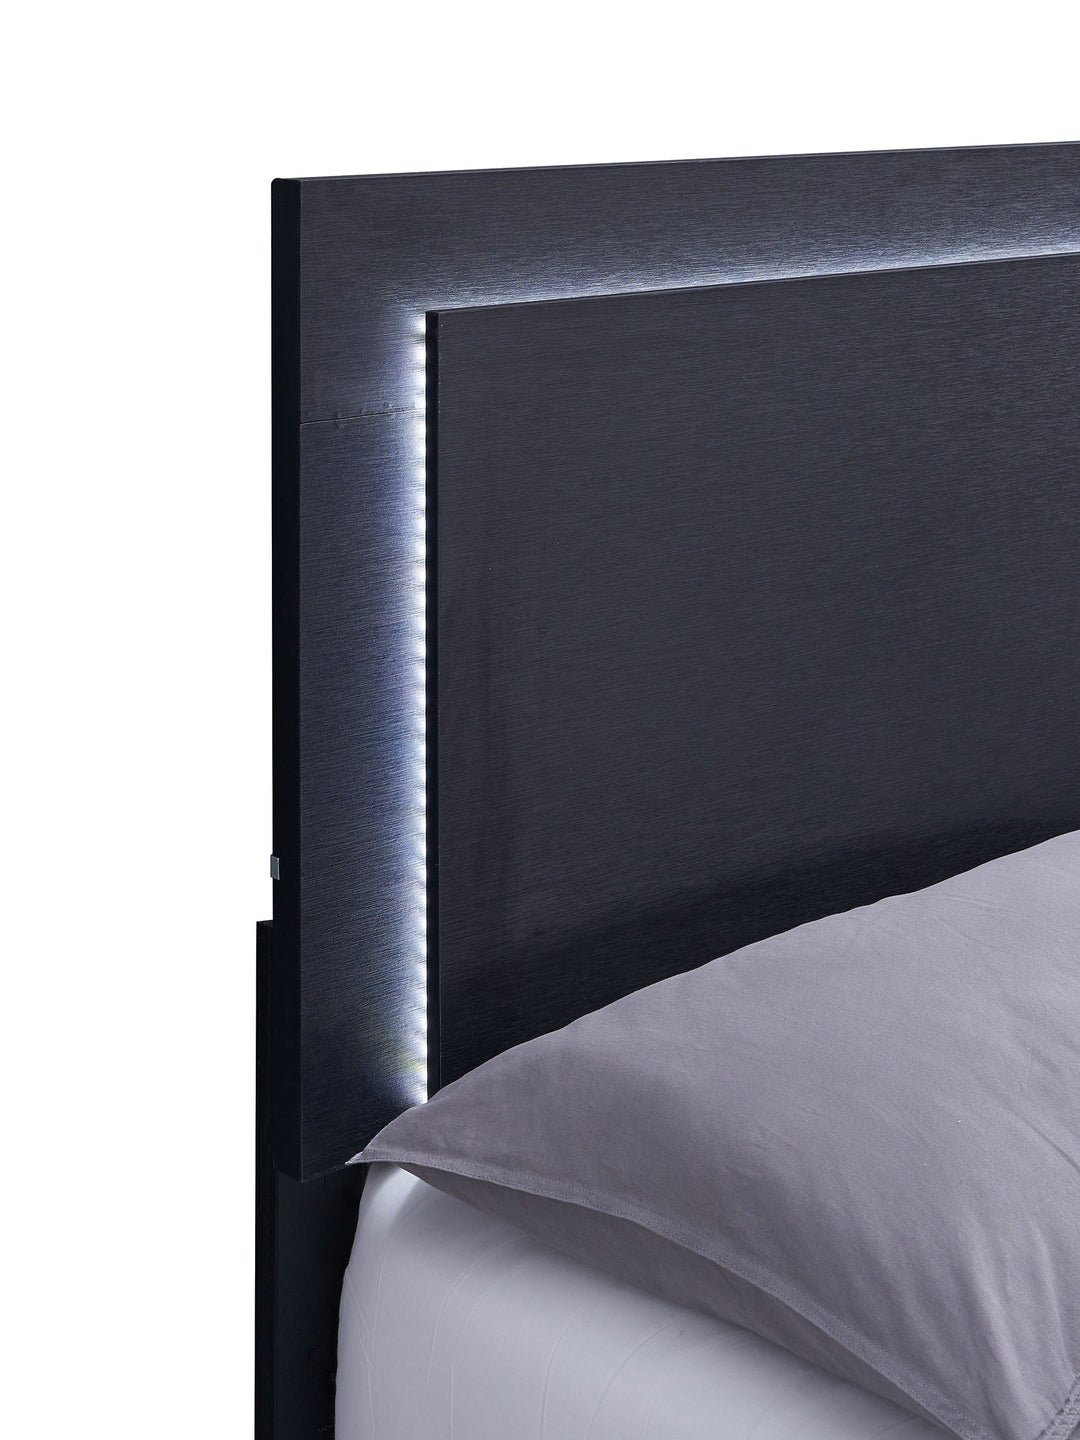 Marceline 4-piece Queen Bedroom Set with LED Headboard Black_11